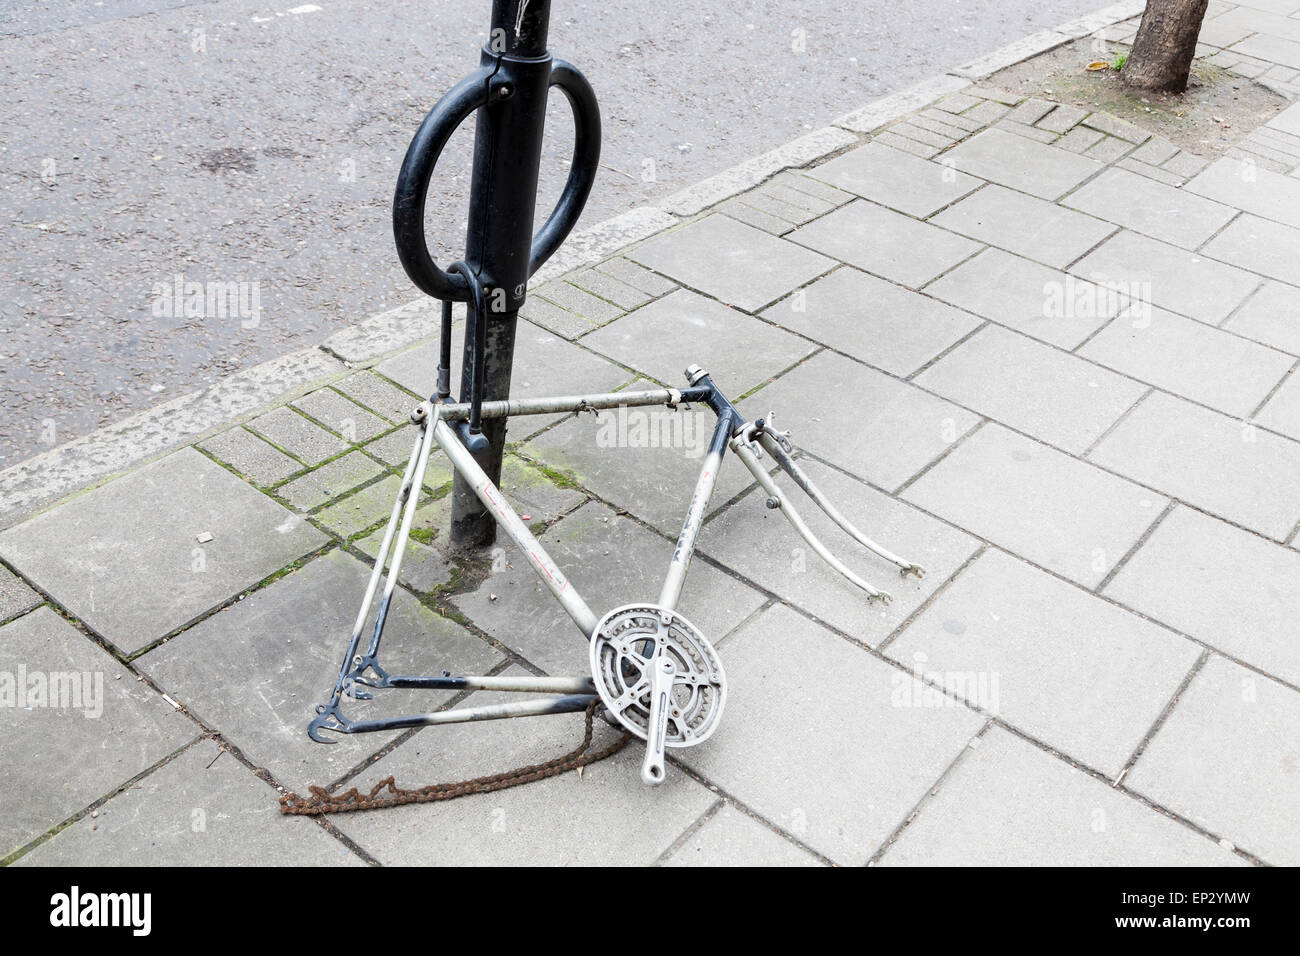 Fahrrad Diebstahl. Räder, Lenker, Pedale, Sitz und andere Teile von einer gesperrten Fahrrad gestohlen, London, England, Großbritannien Stockfoto